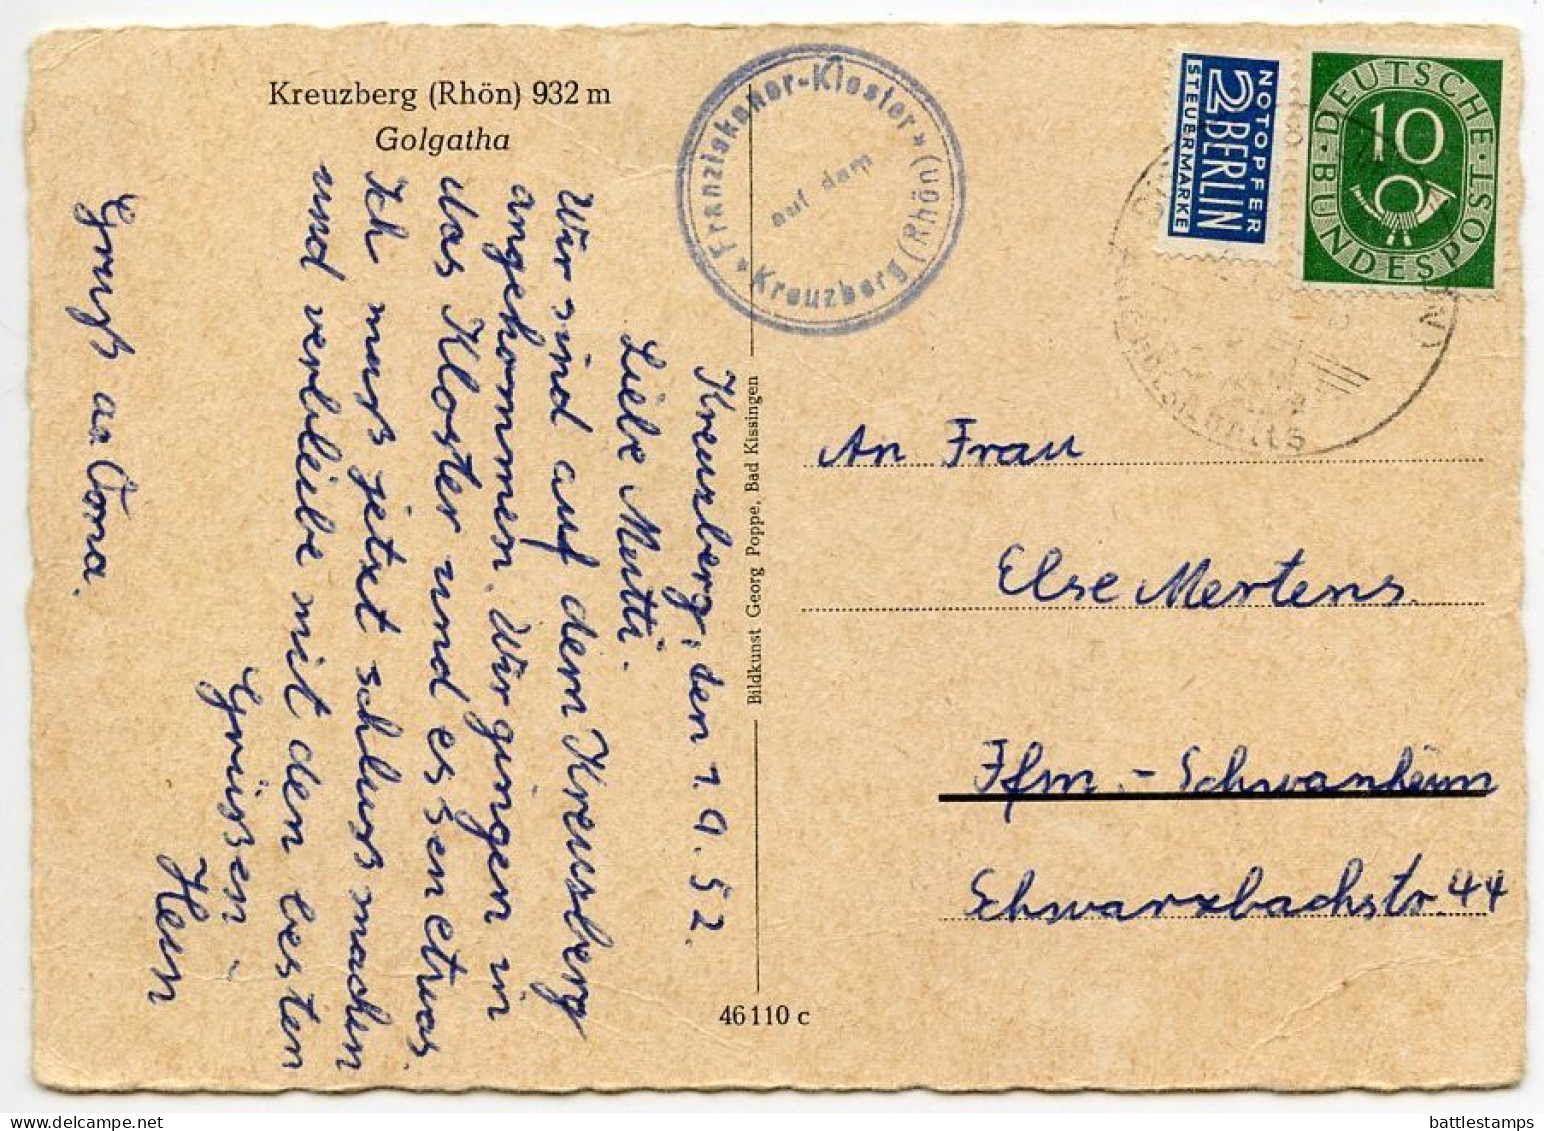 Germany, West 1952 Postcard Kreuzberg (Rhön) 932 M - Golgatha (Crucifixes); Blue Flea Tax Stamp - Kreuzberg